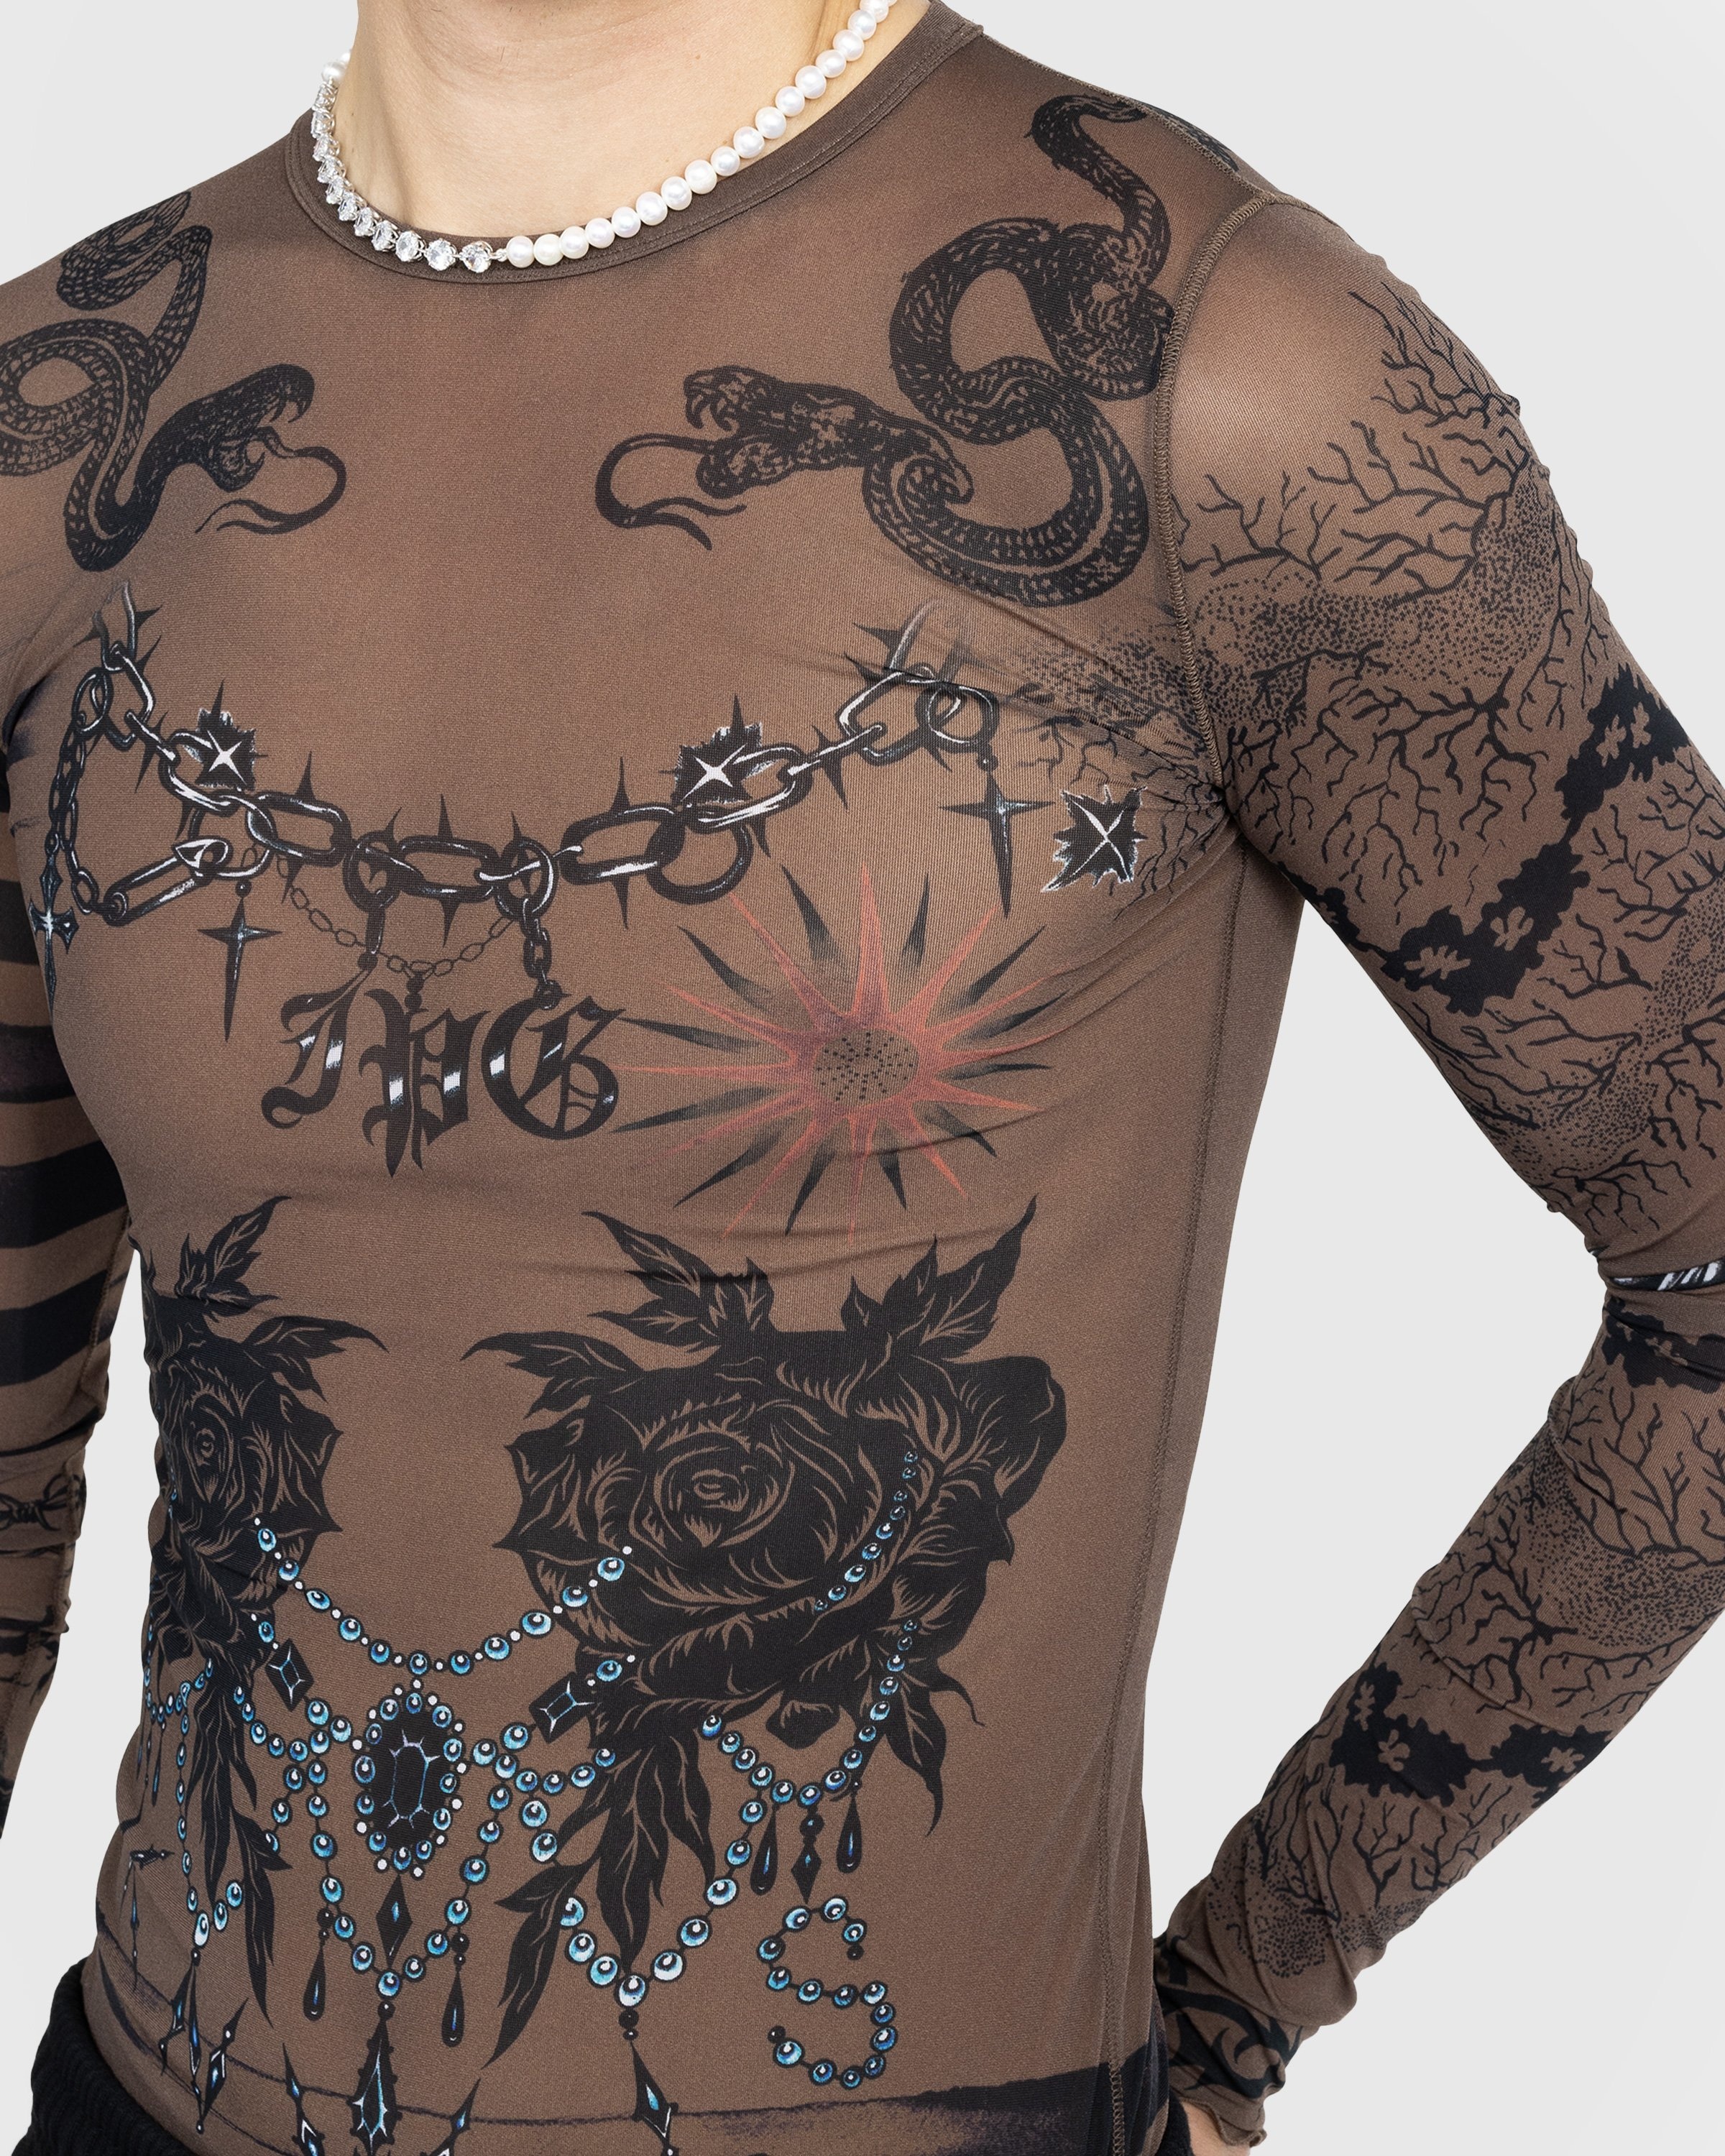 Jean Paul Gaultier – Trompe l'oeil Tattoo Longsleeve Top Ebene